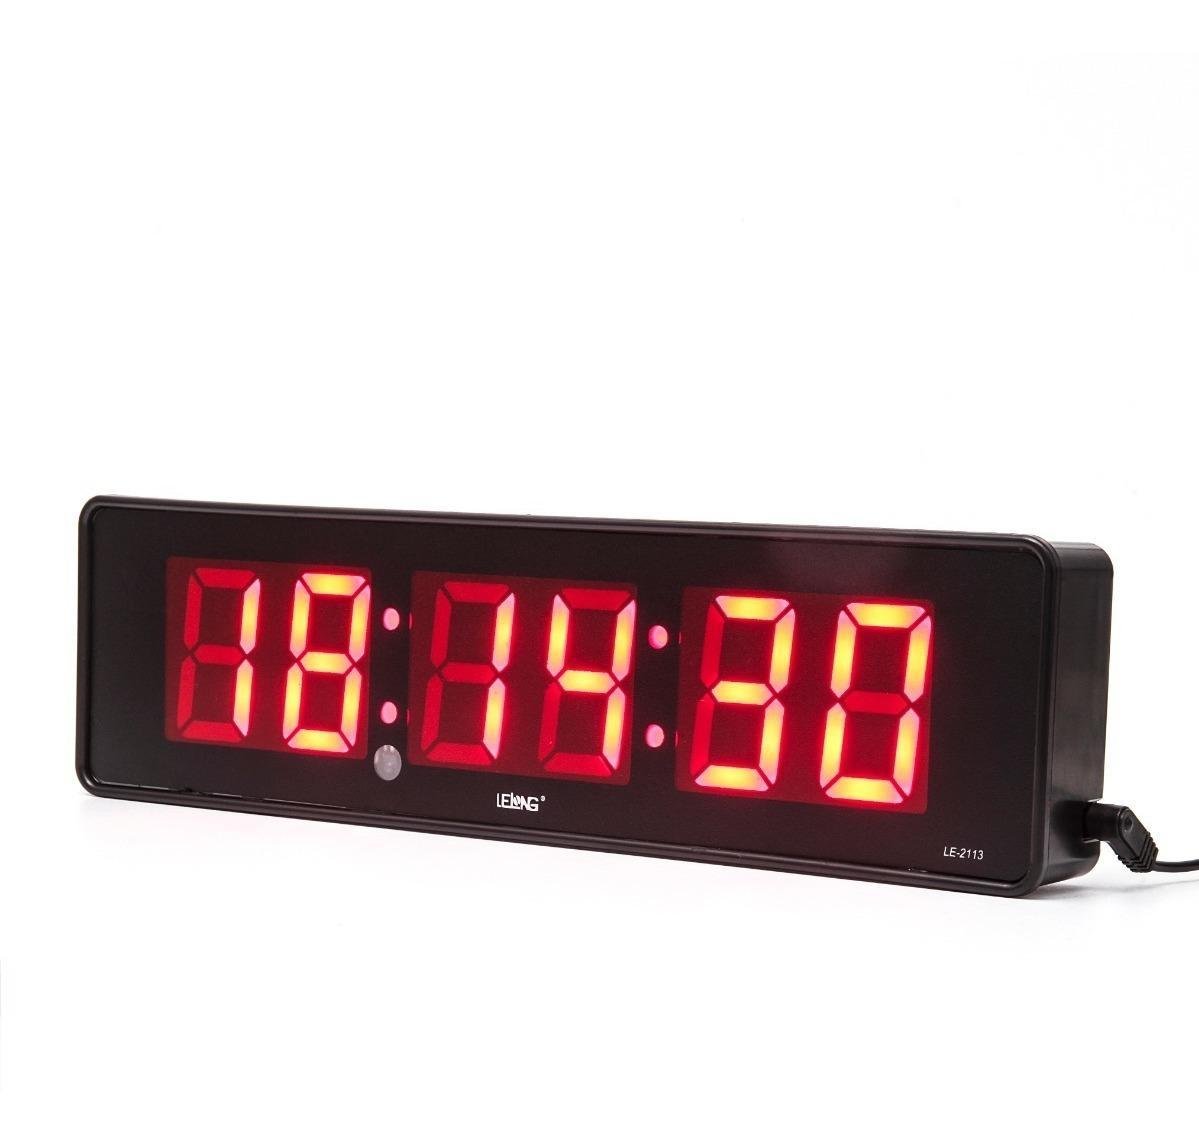 Cronometro Relógio Led Digital Parede Mesa com Controle 2113 - 1